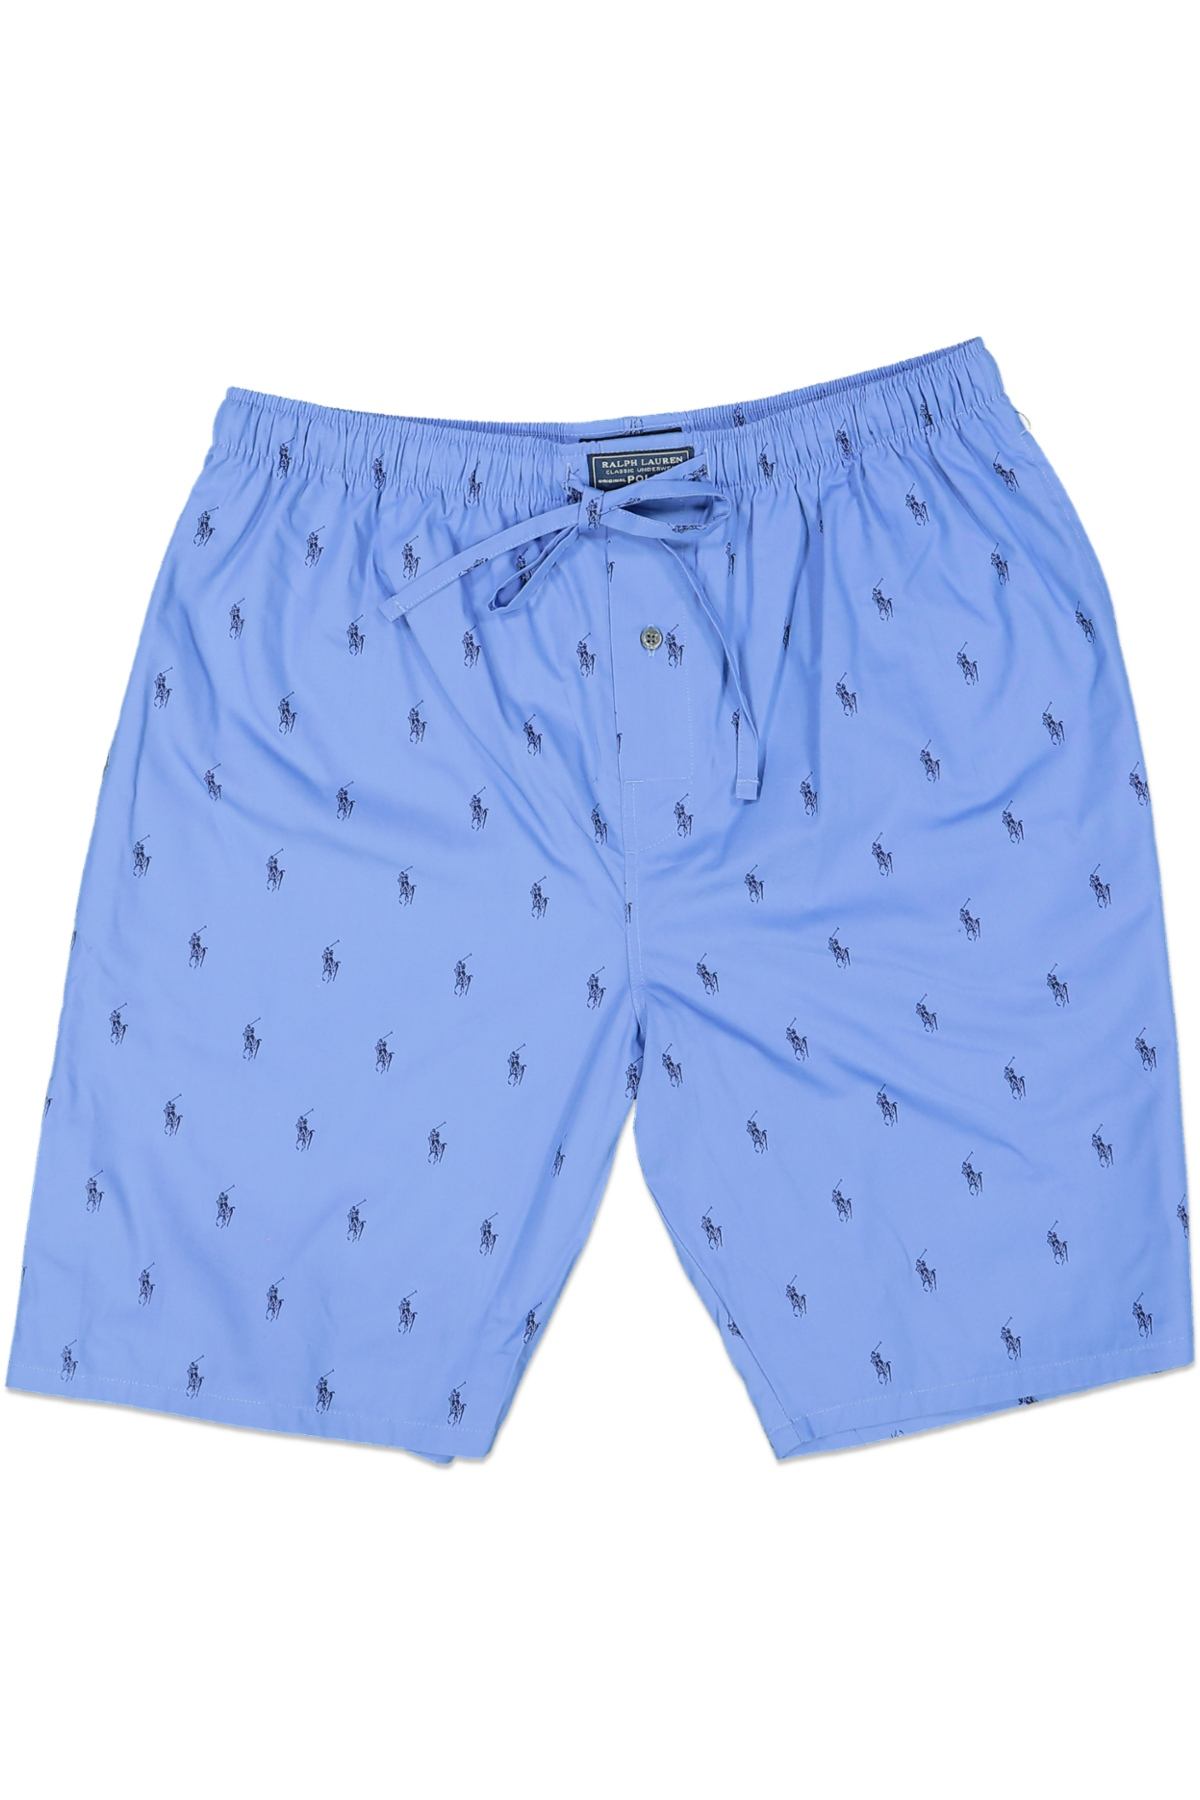 Polo Ralph Lauren Sleep Shorts Blue – CheapUndies